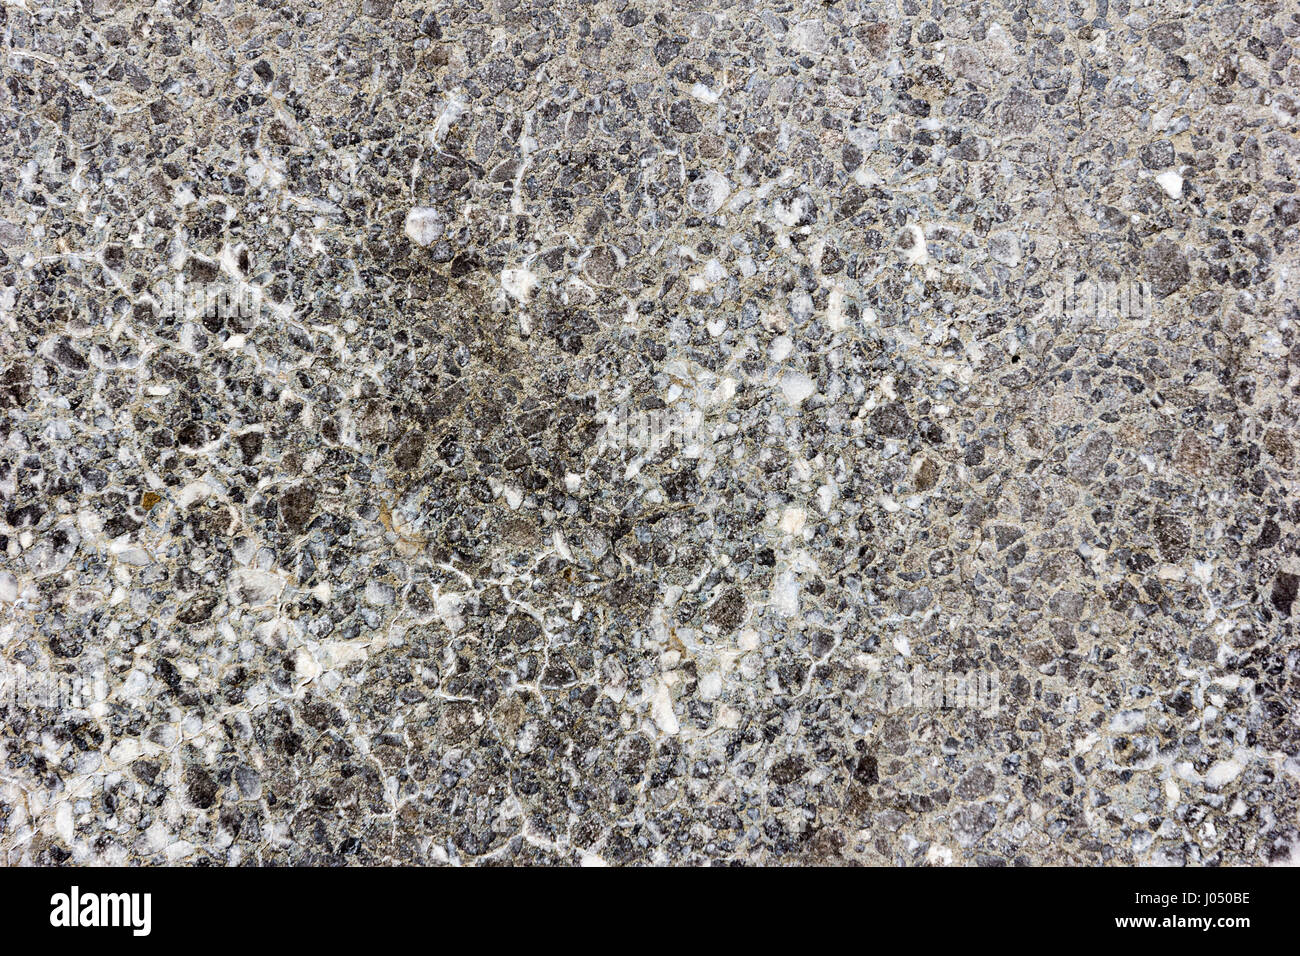 Concrete texture surface Stock Photo